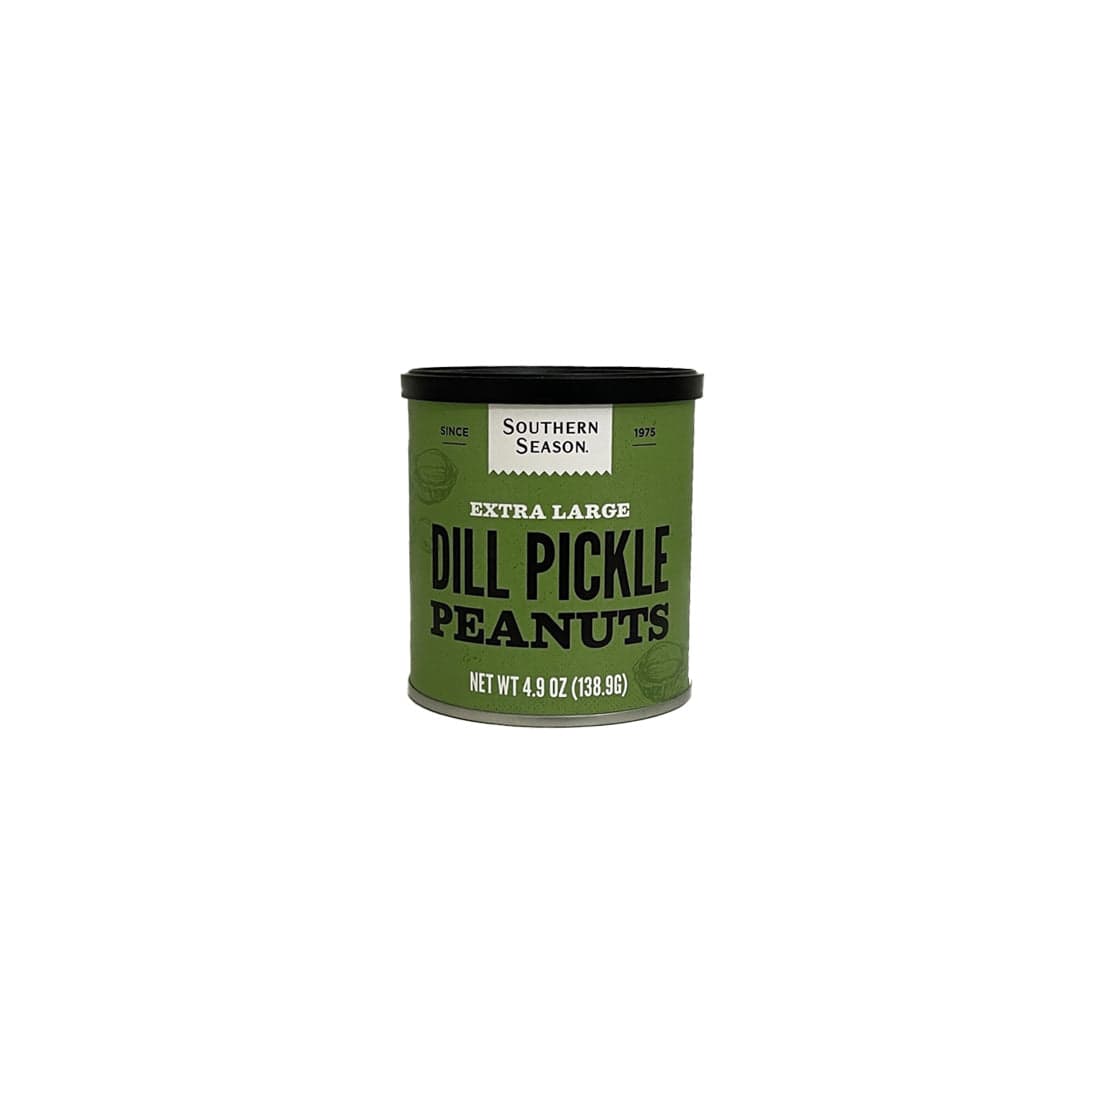 Southern Season Southern Season Dill Pickle Peanuts 4.9 oz